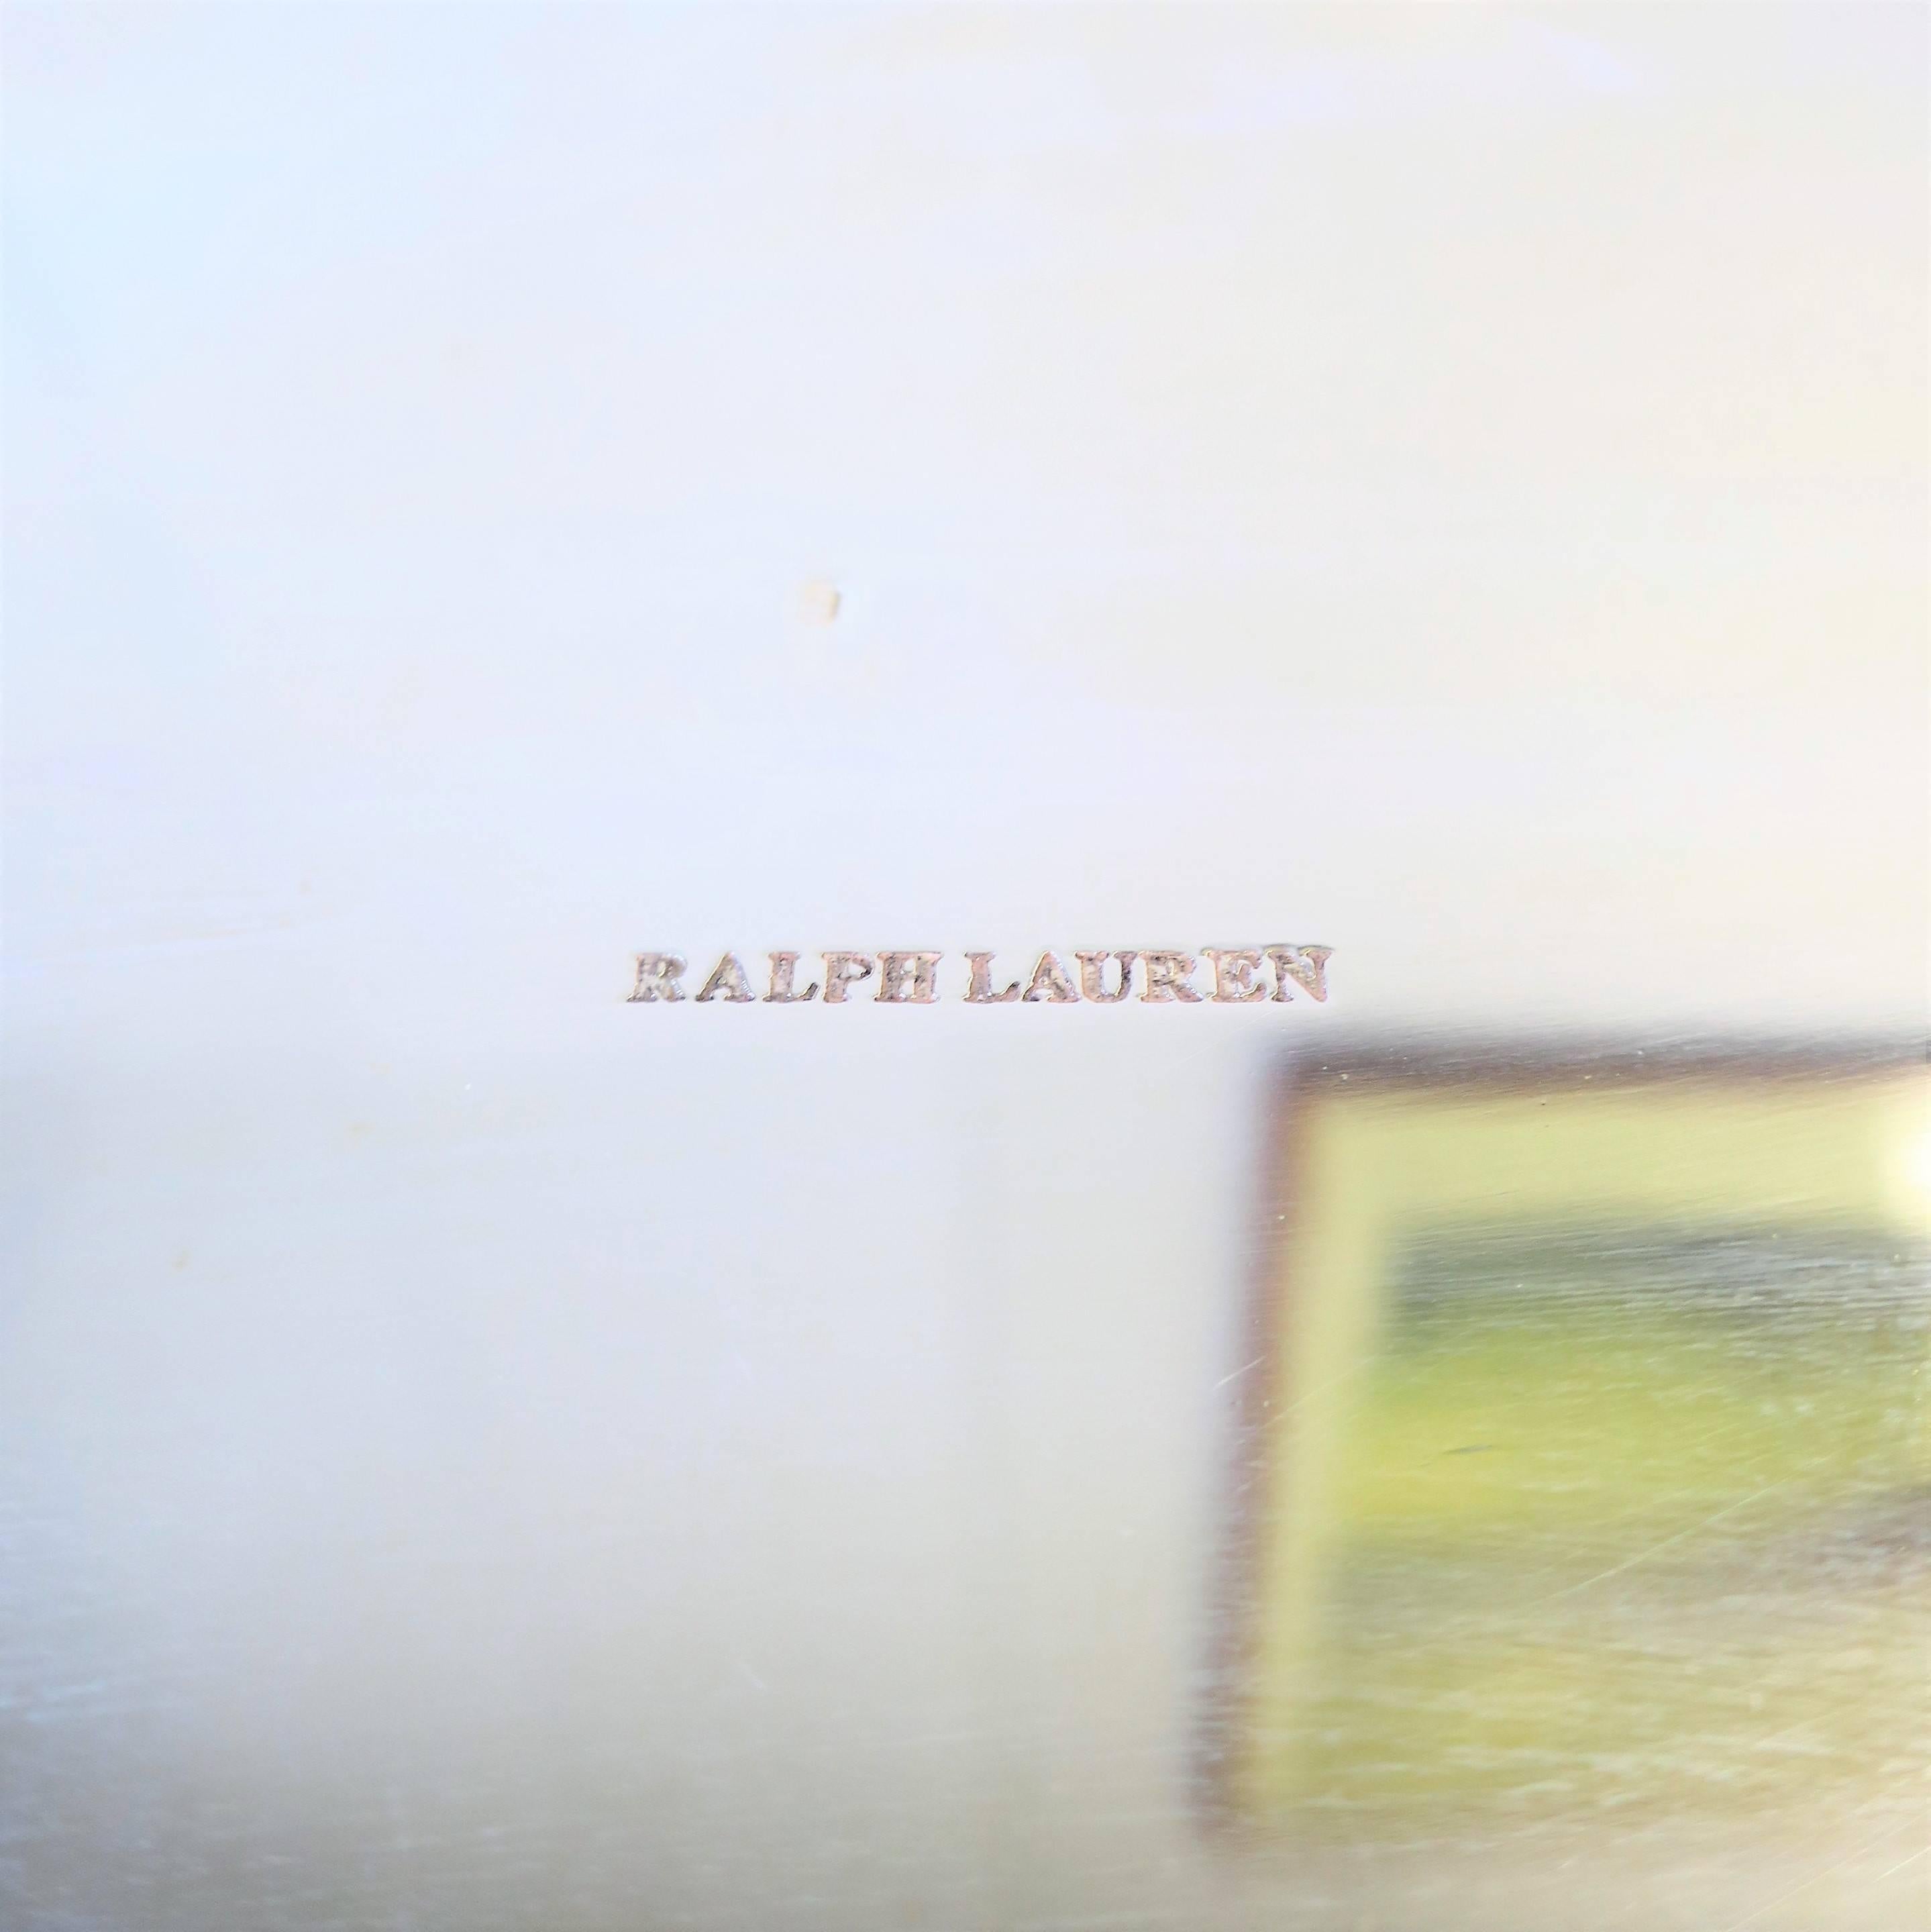 Ralph Lauren Silver Box 9